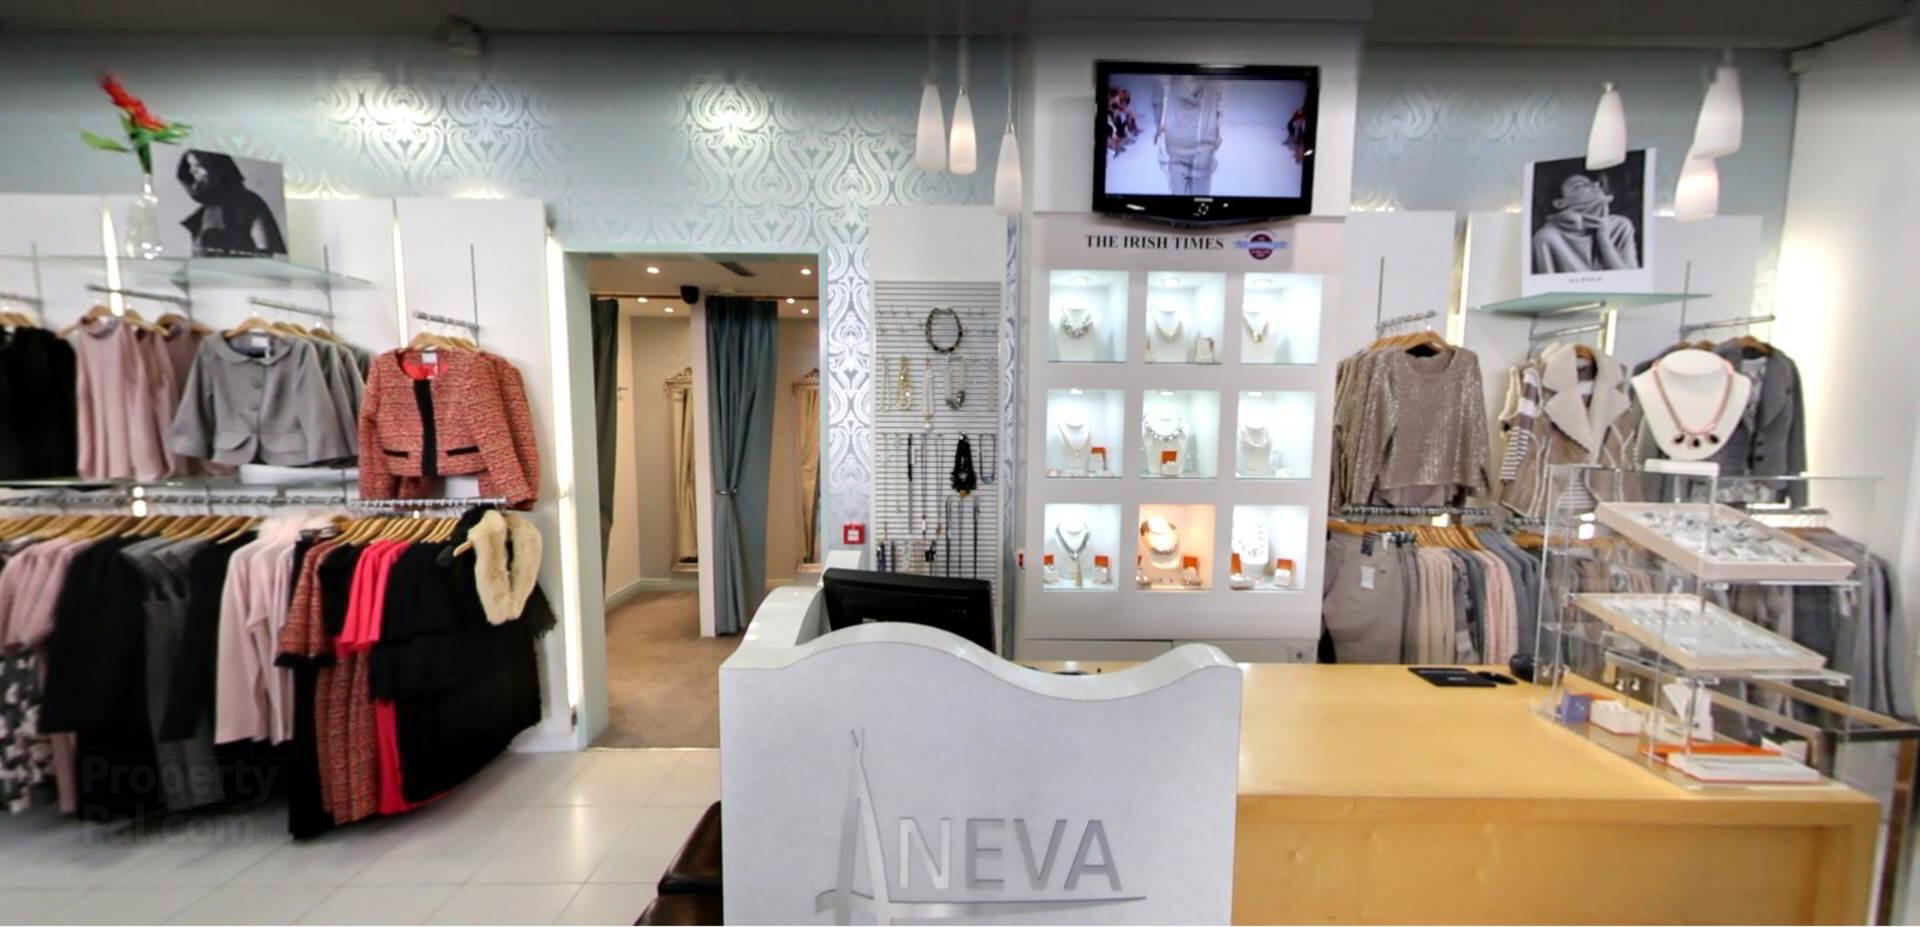 Aneva Boutique